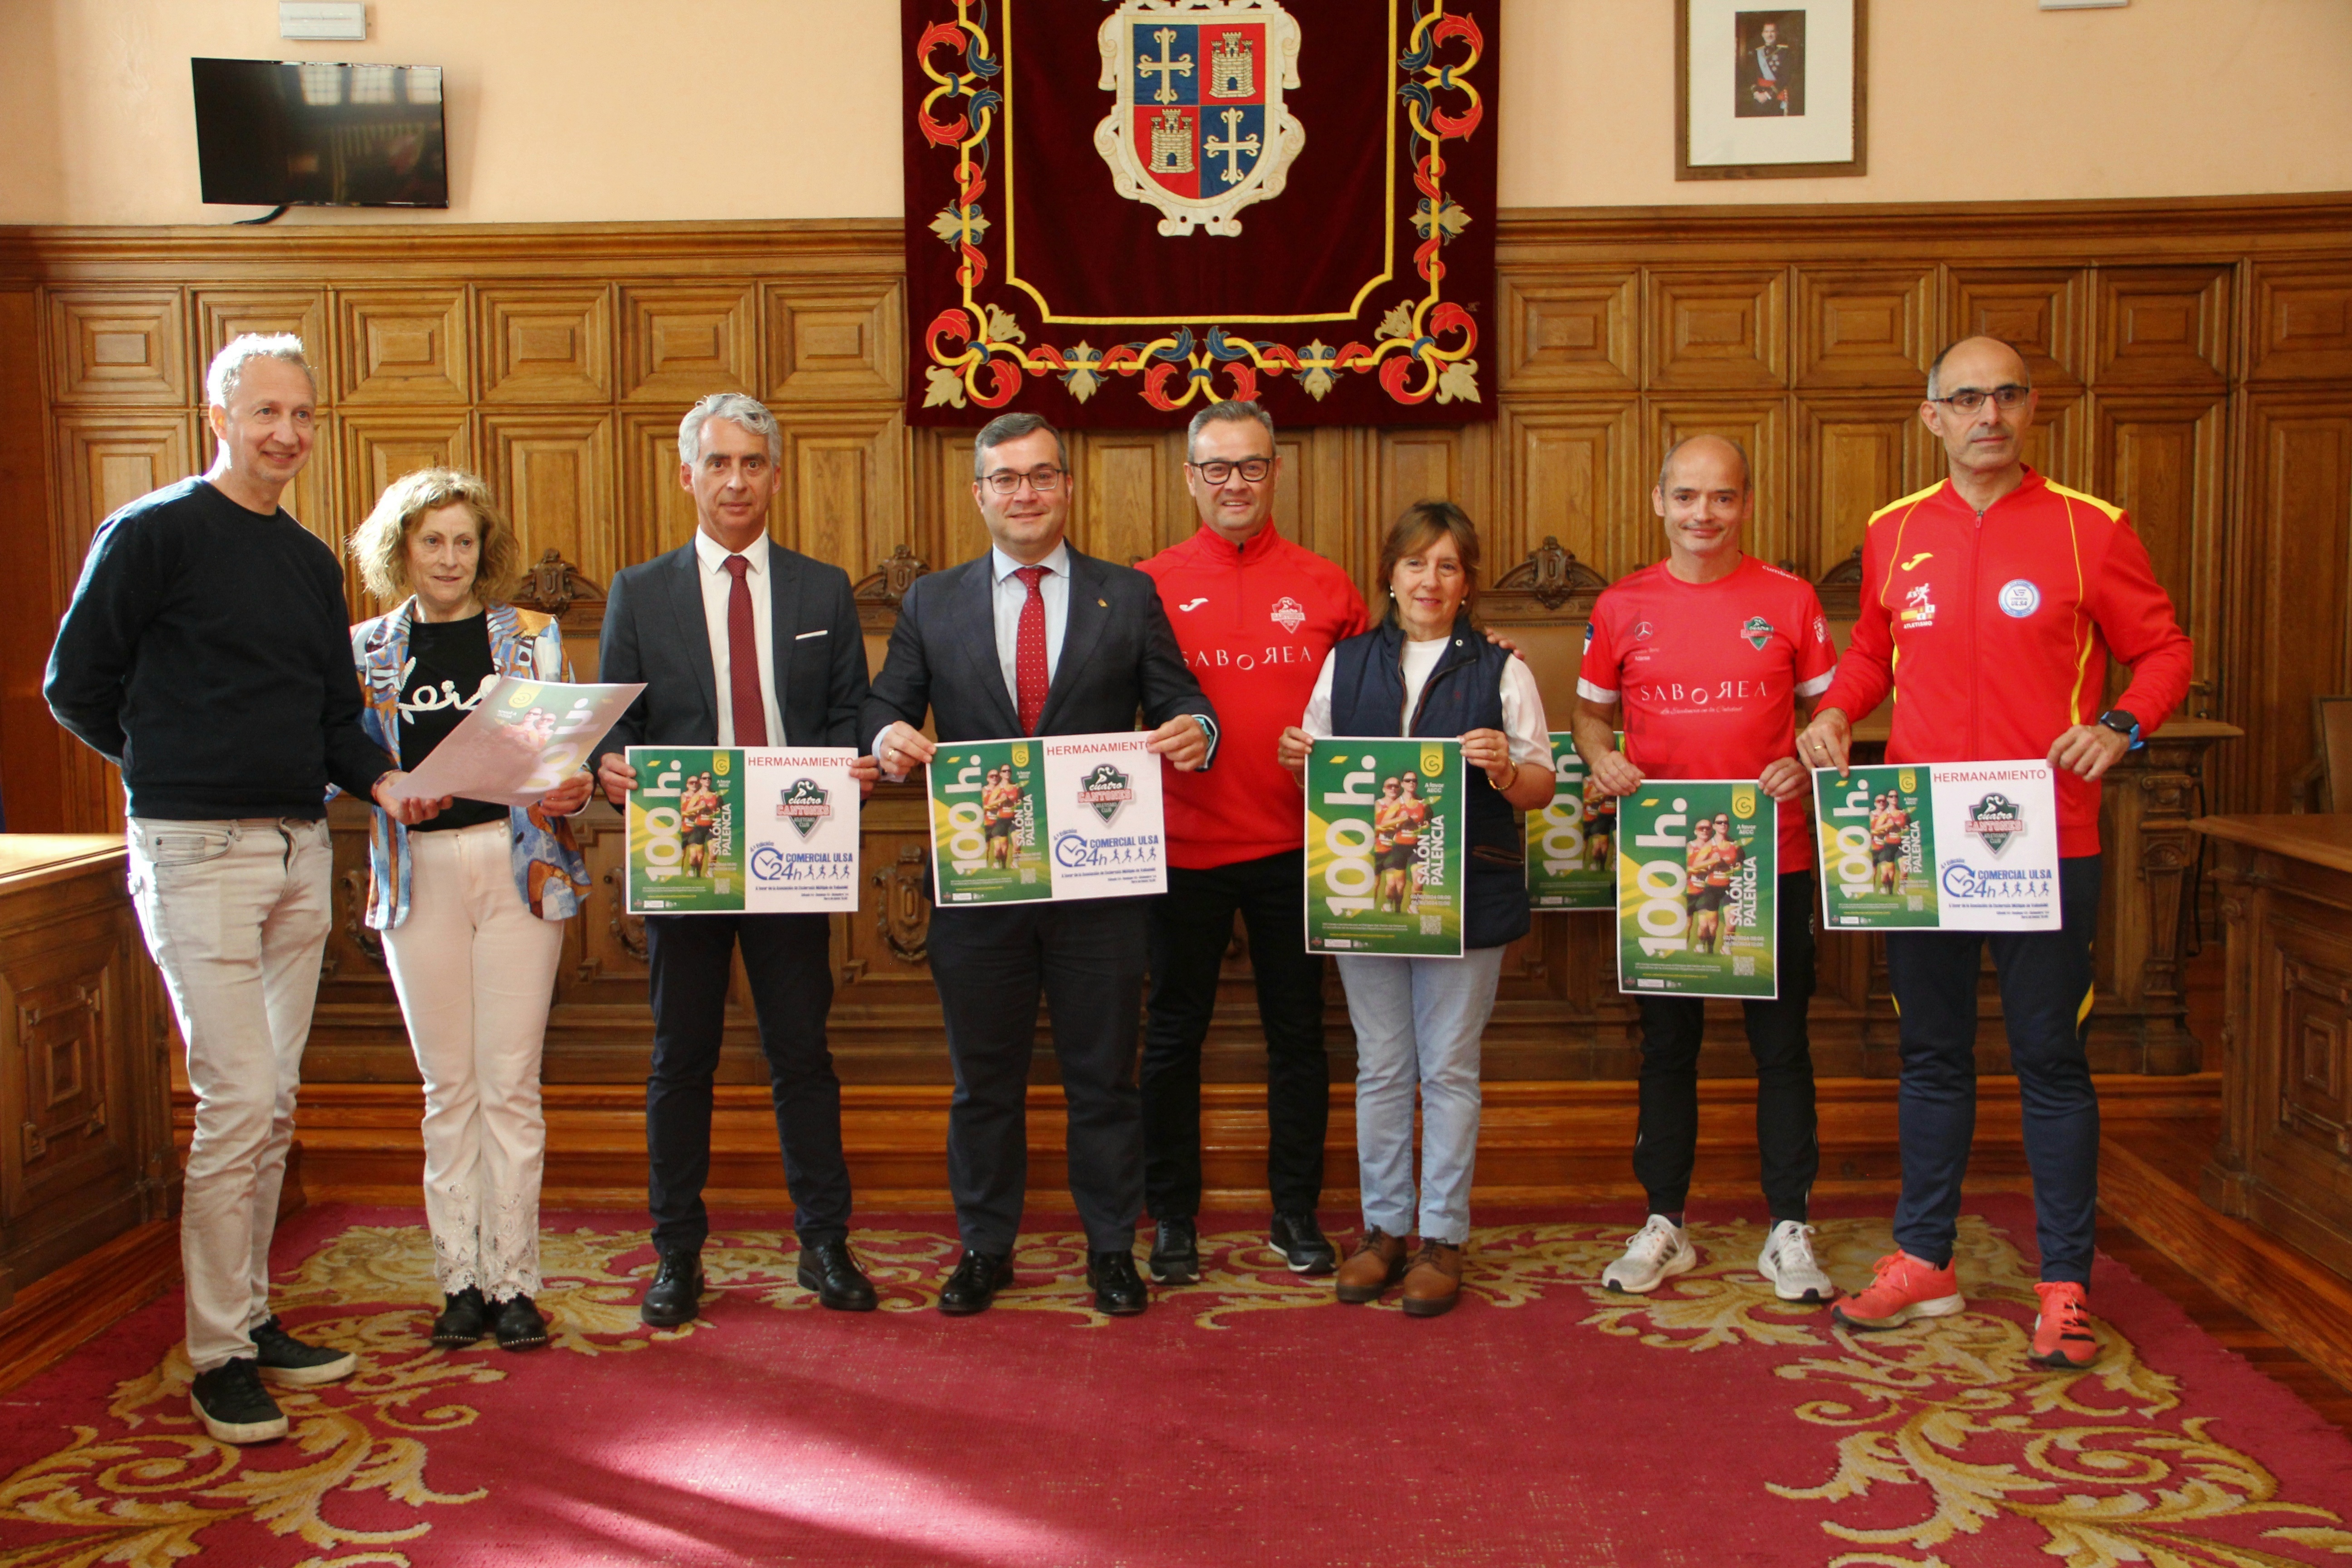 La carrera solidaria, organizada por el Club de Atletismo Saborea Cuatro Cantones en colaboración con el PMD y la Asociación Española Contra el Cáncer de Palencia, cuenta con una cuota de inscripción de 5 euros.